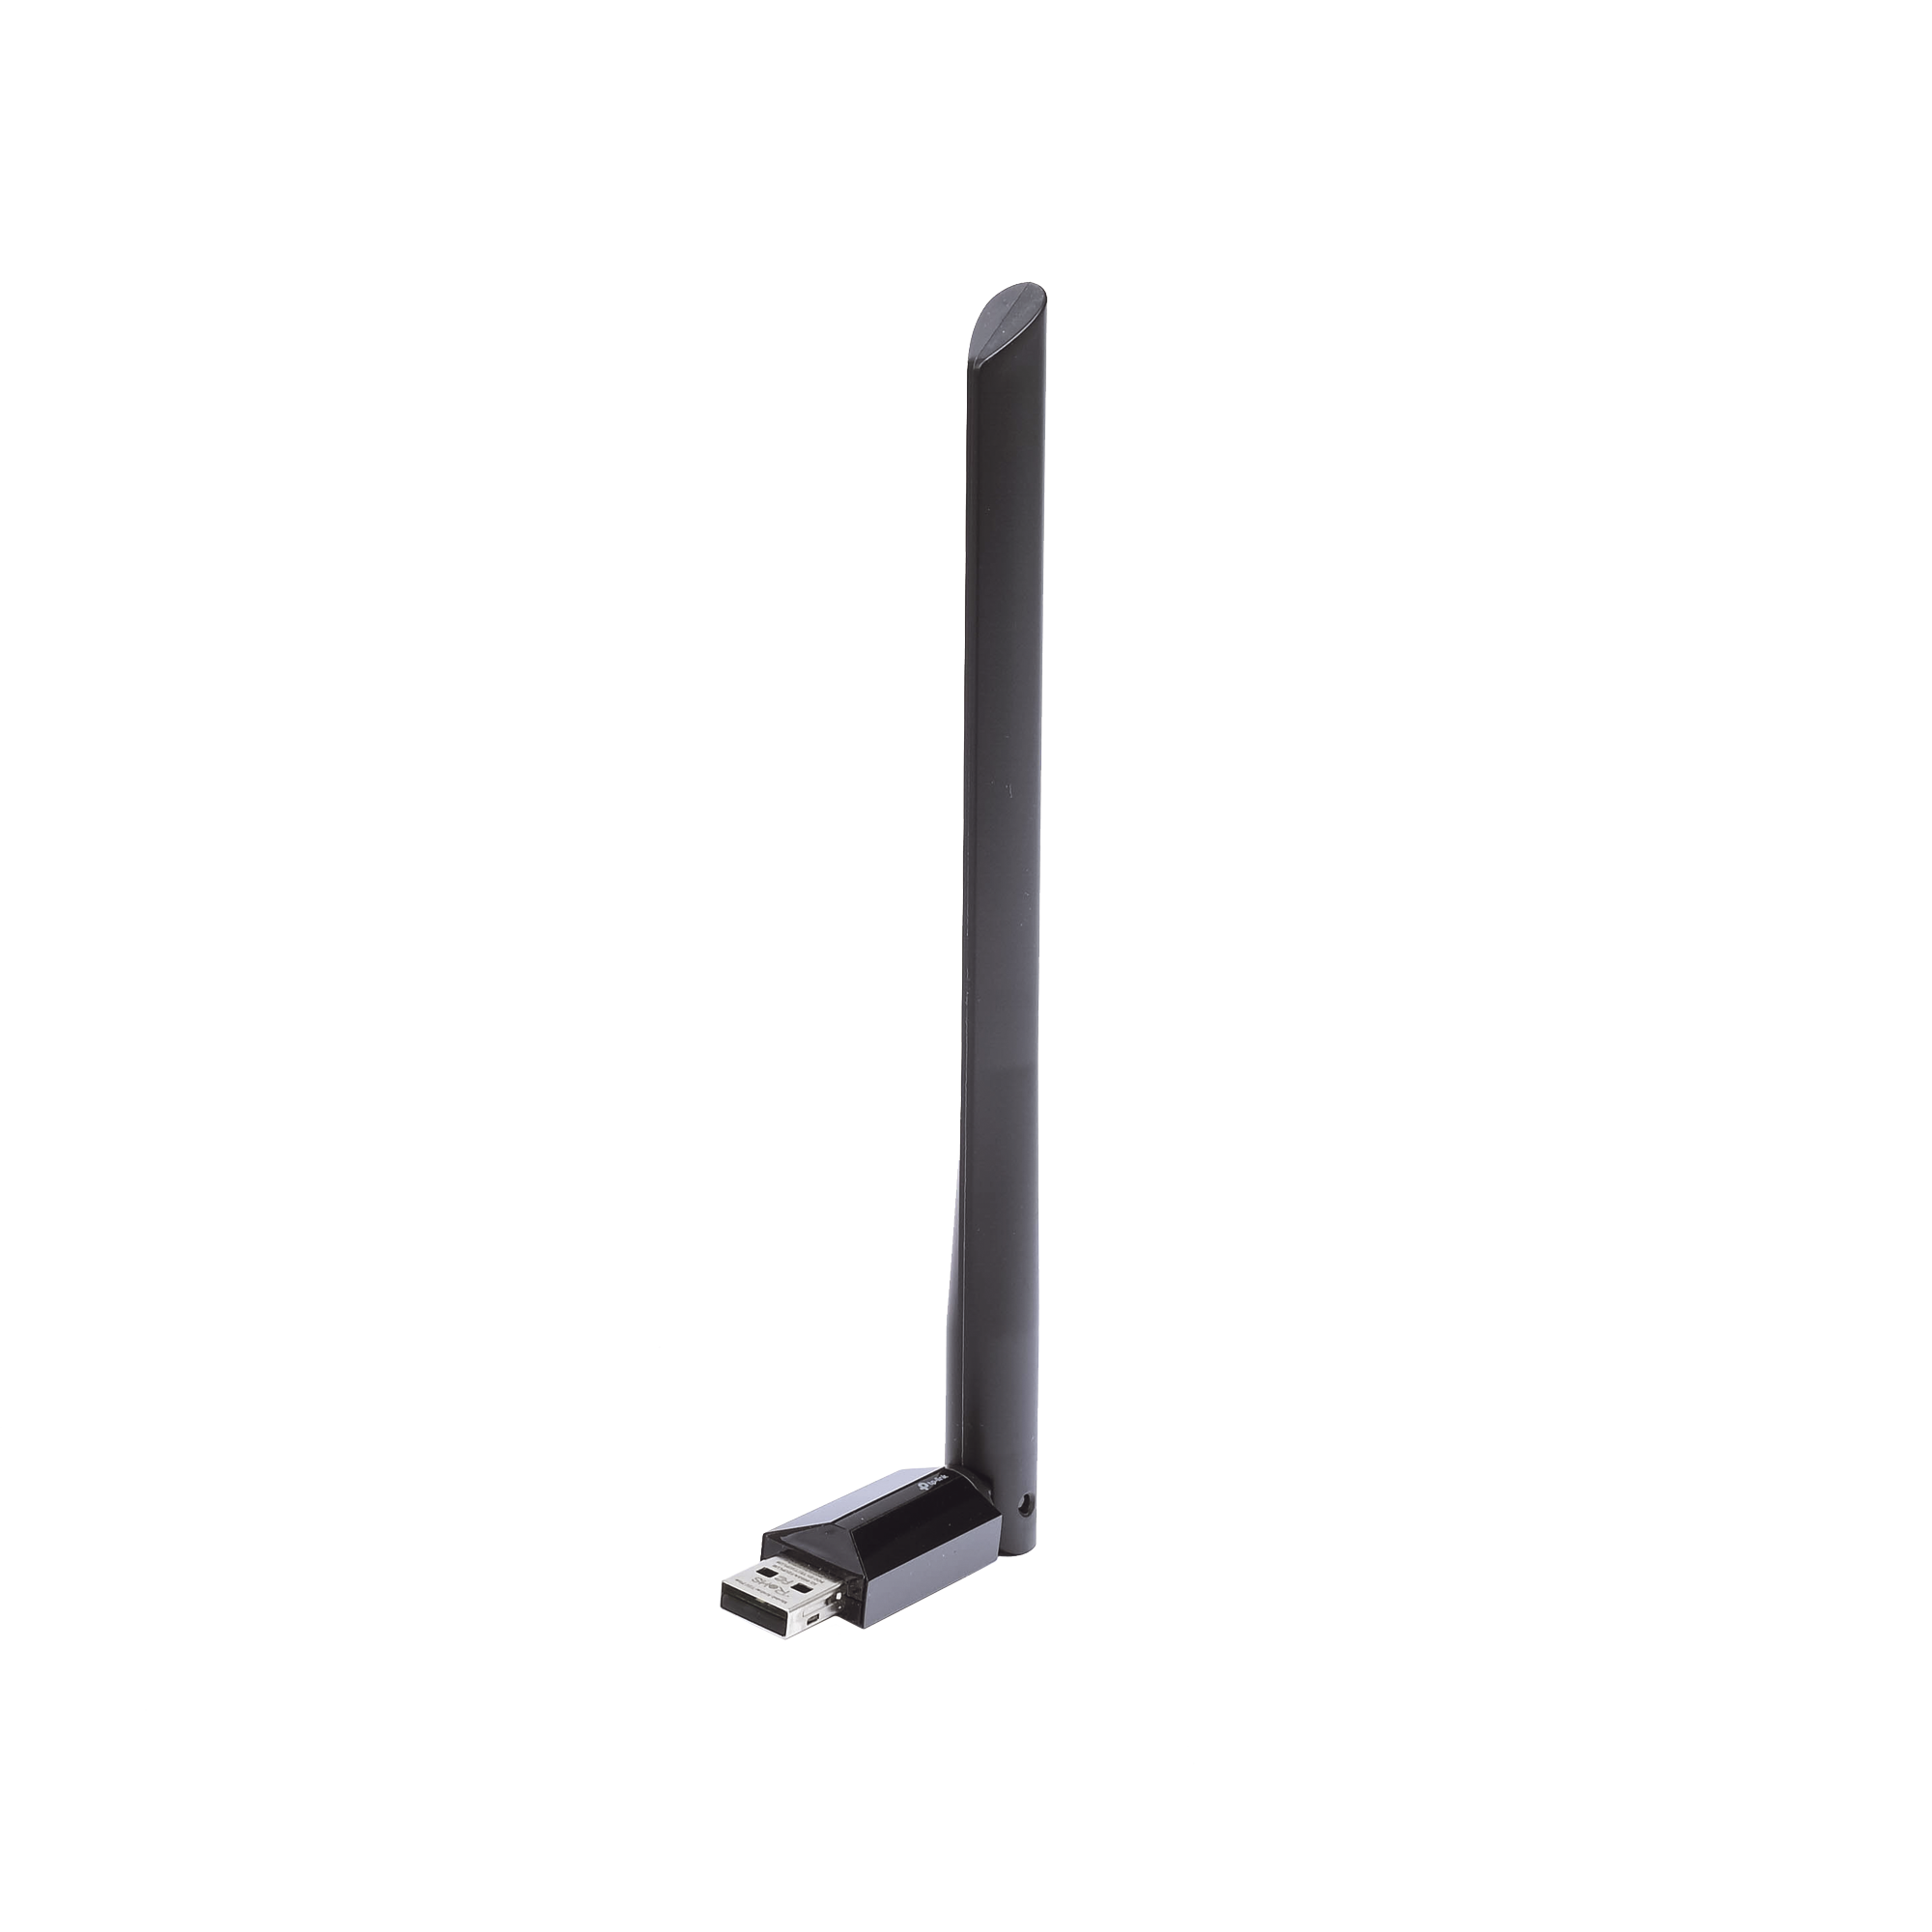 Adaptador  USB inalámbrico doble banda AC 600 Mbps, antena de alta ganancia.